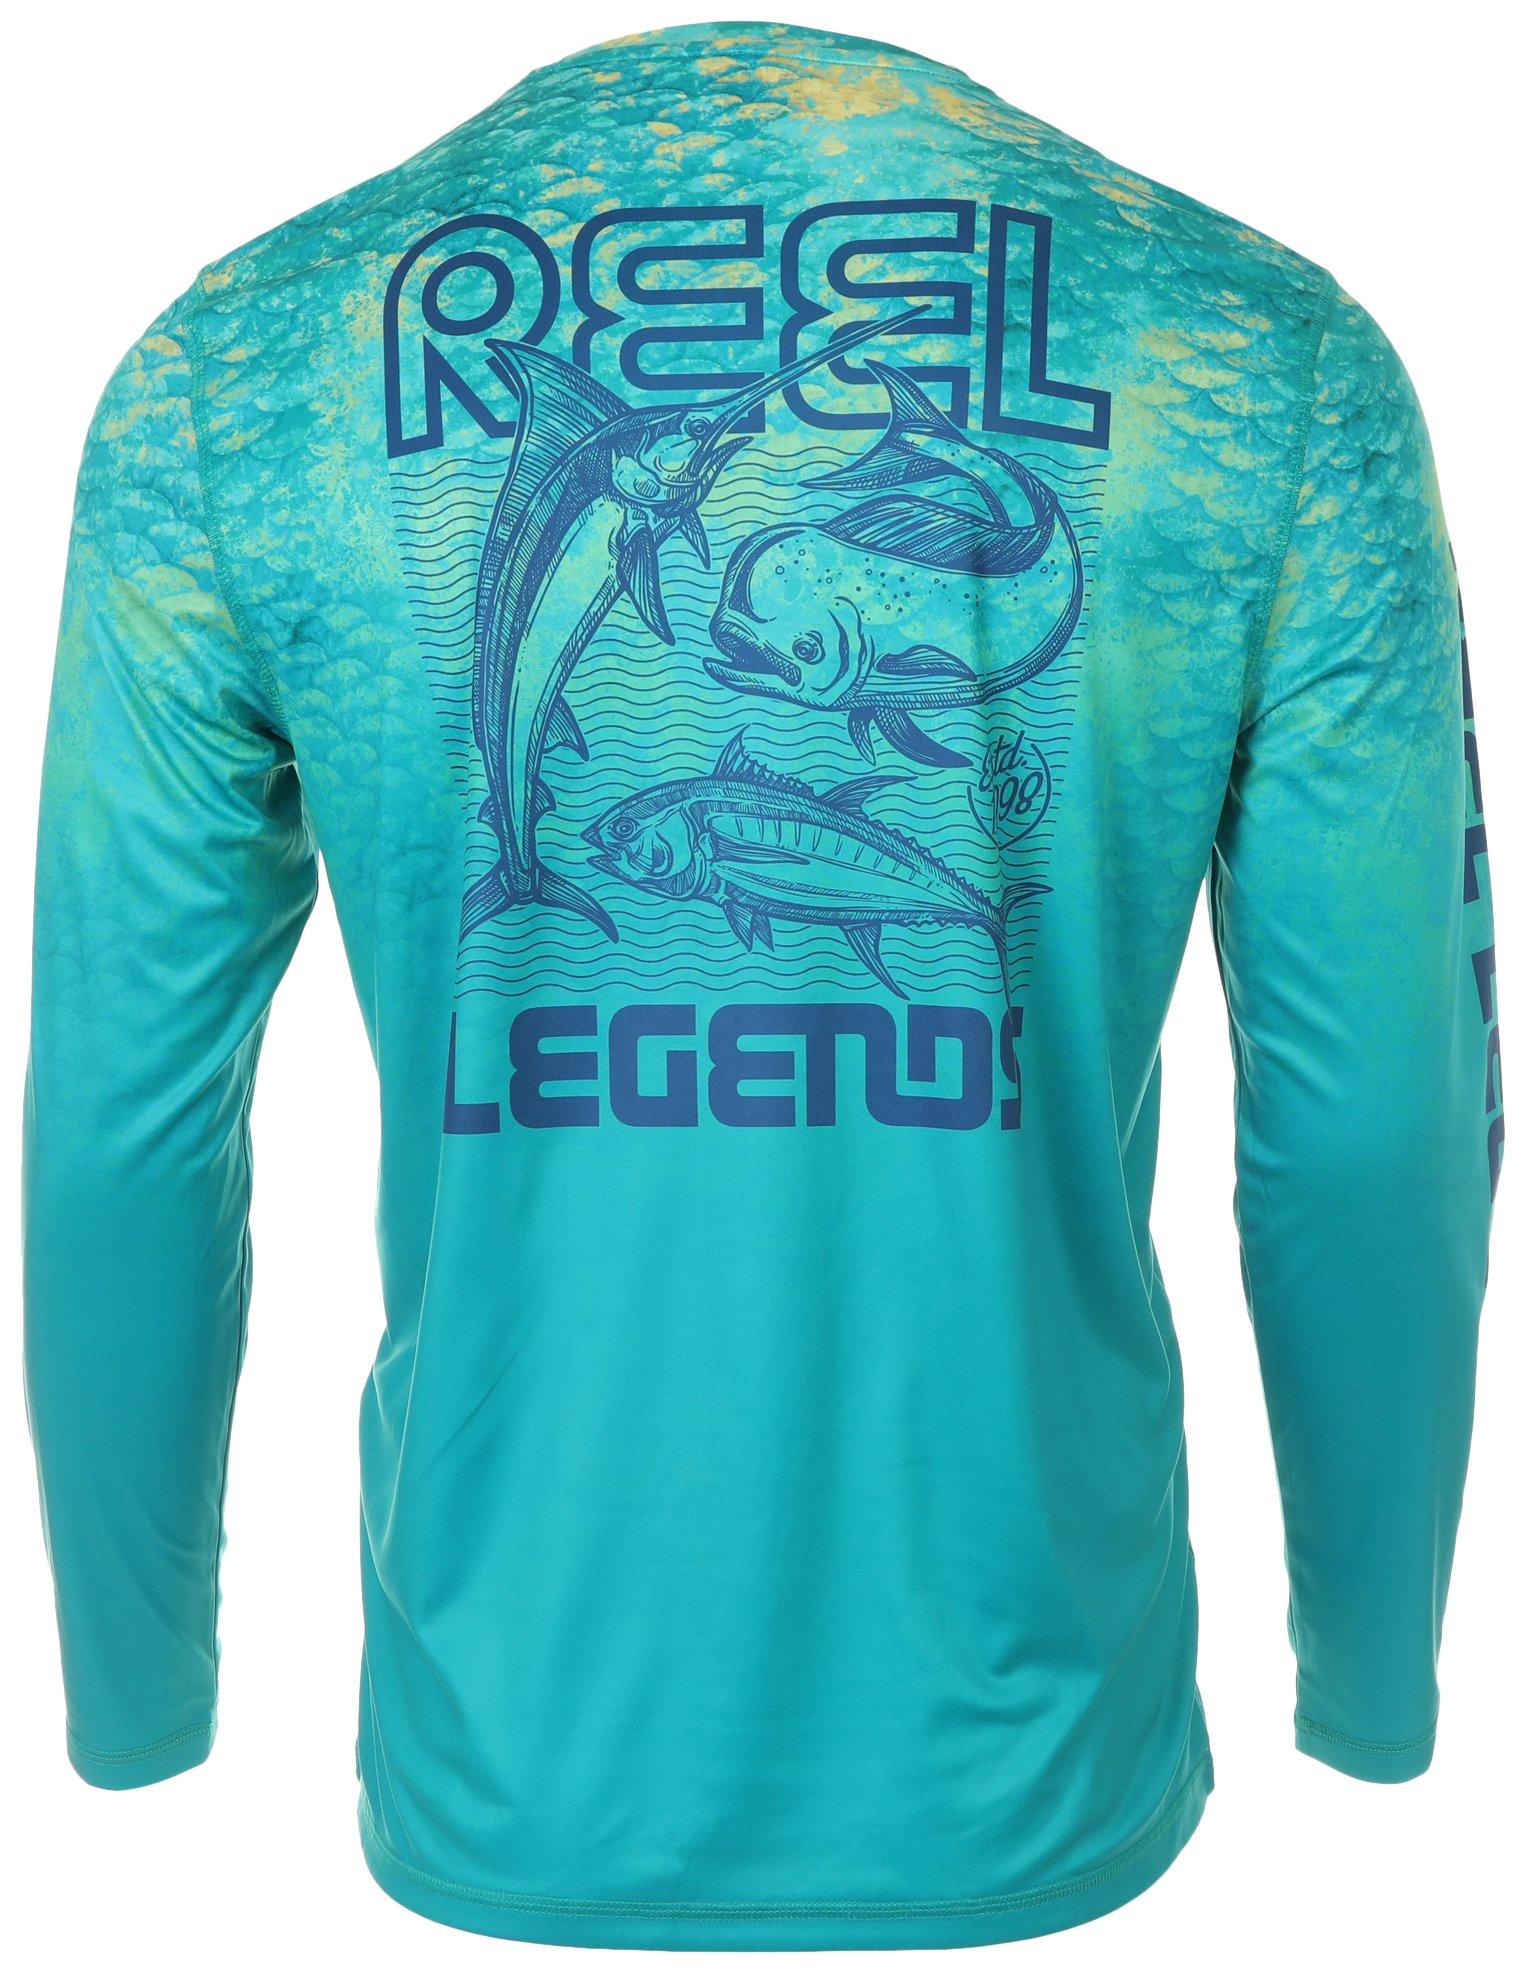 Reel Legends Blue Athletic T-Shirts for Men